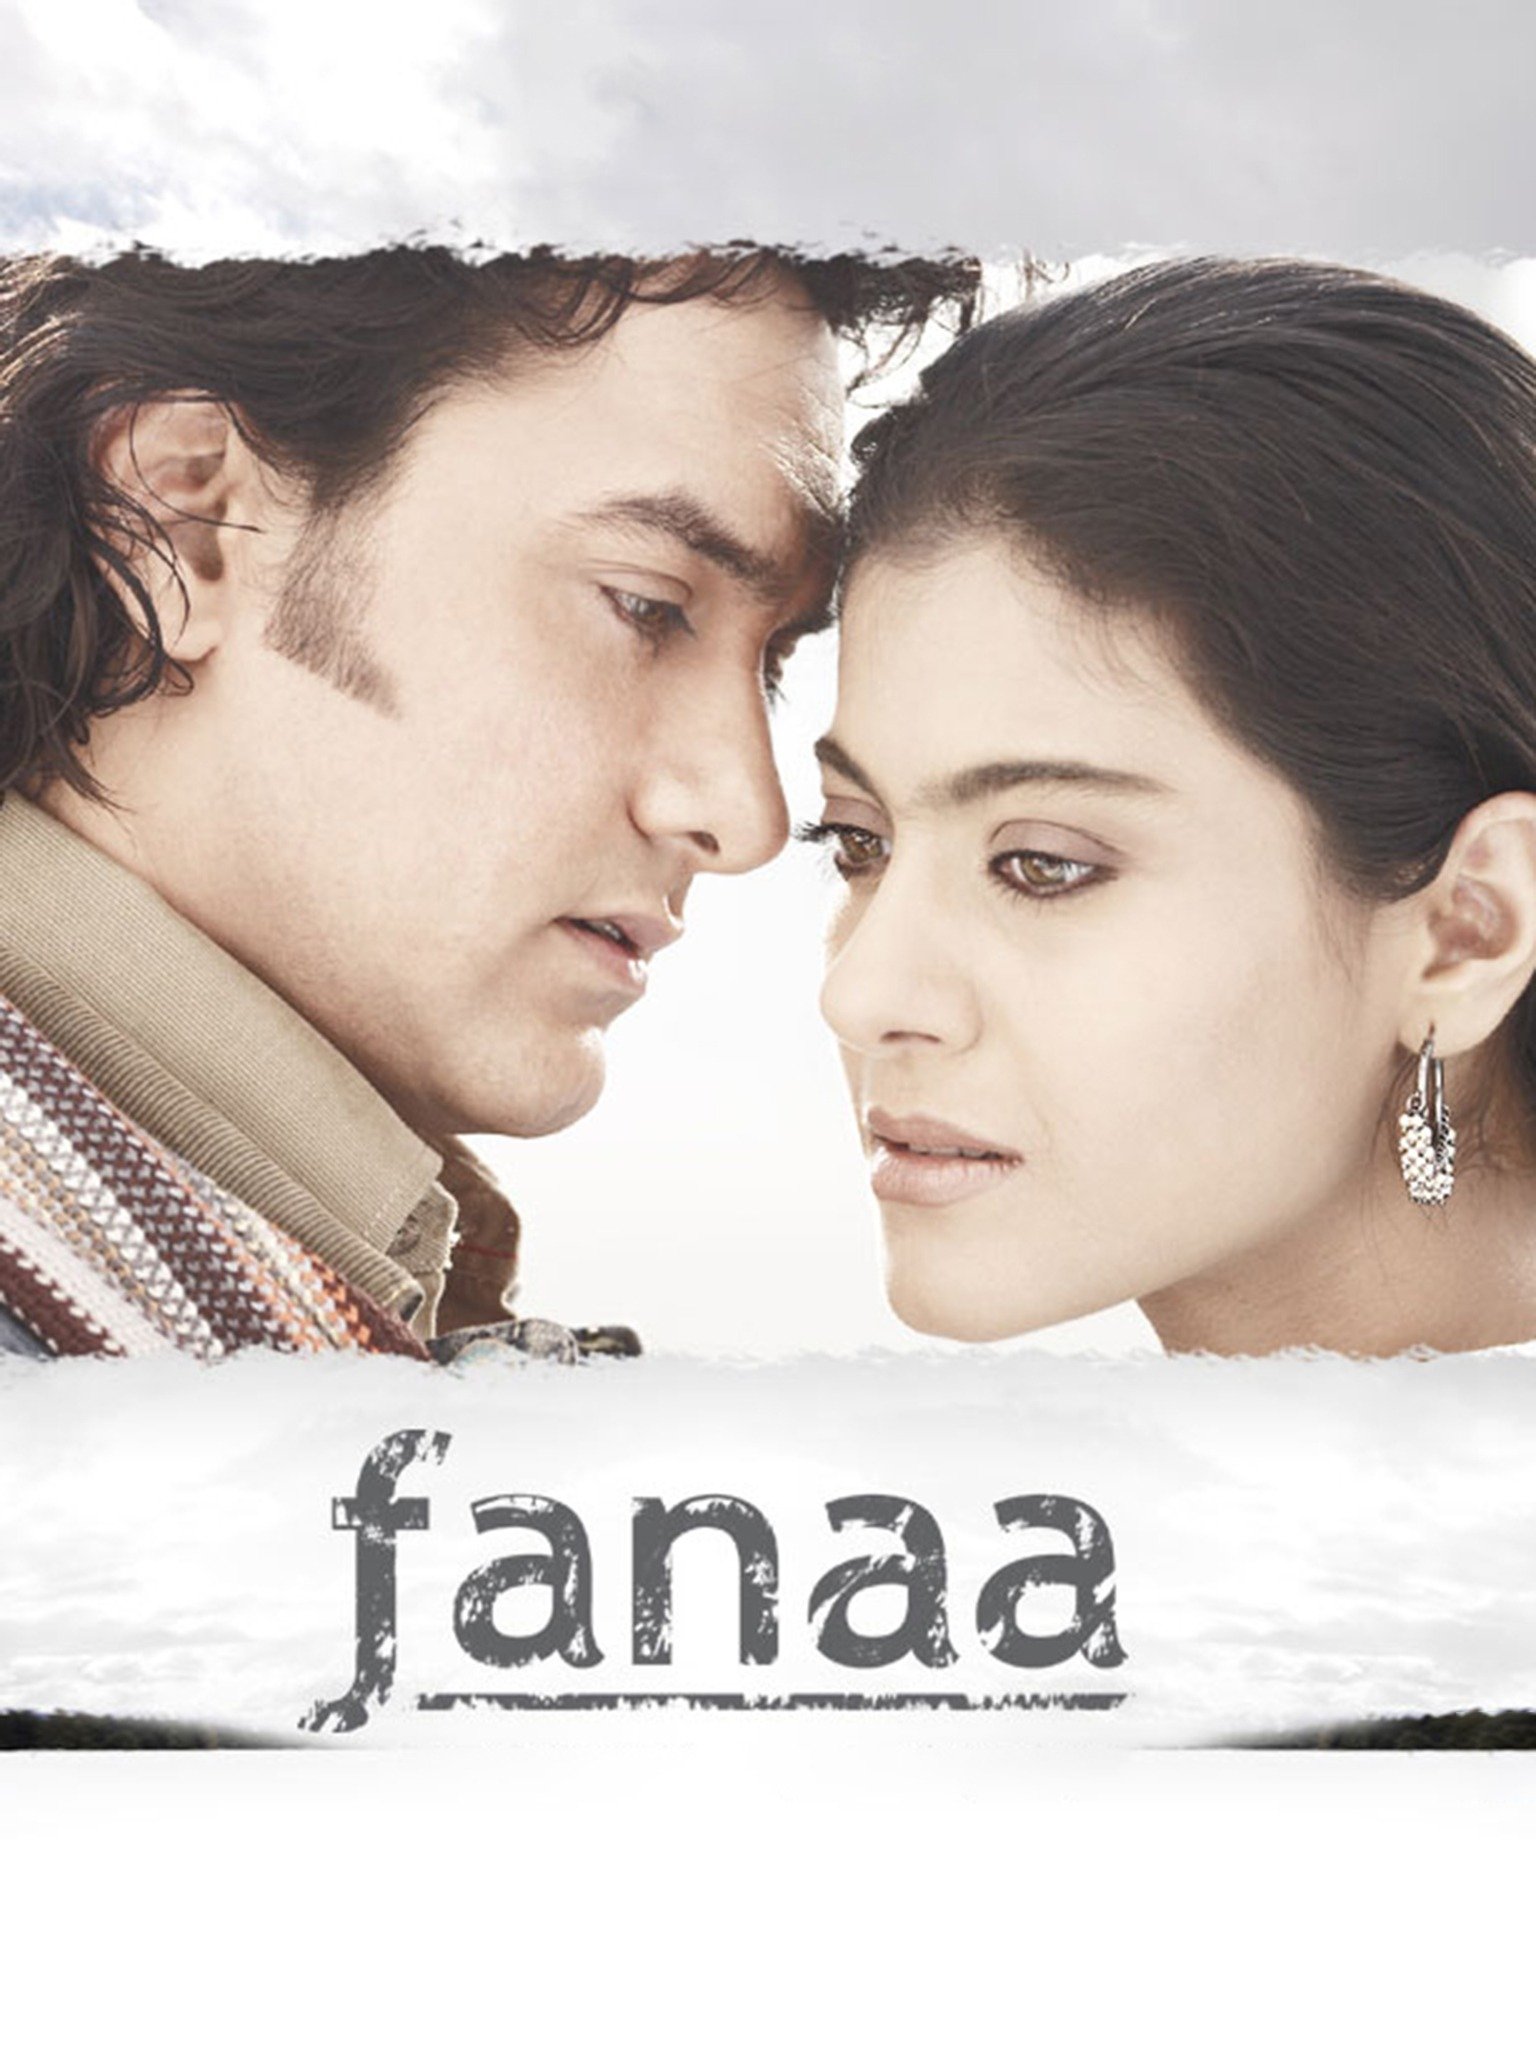 fanaa season 2